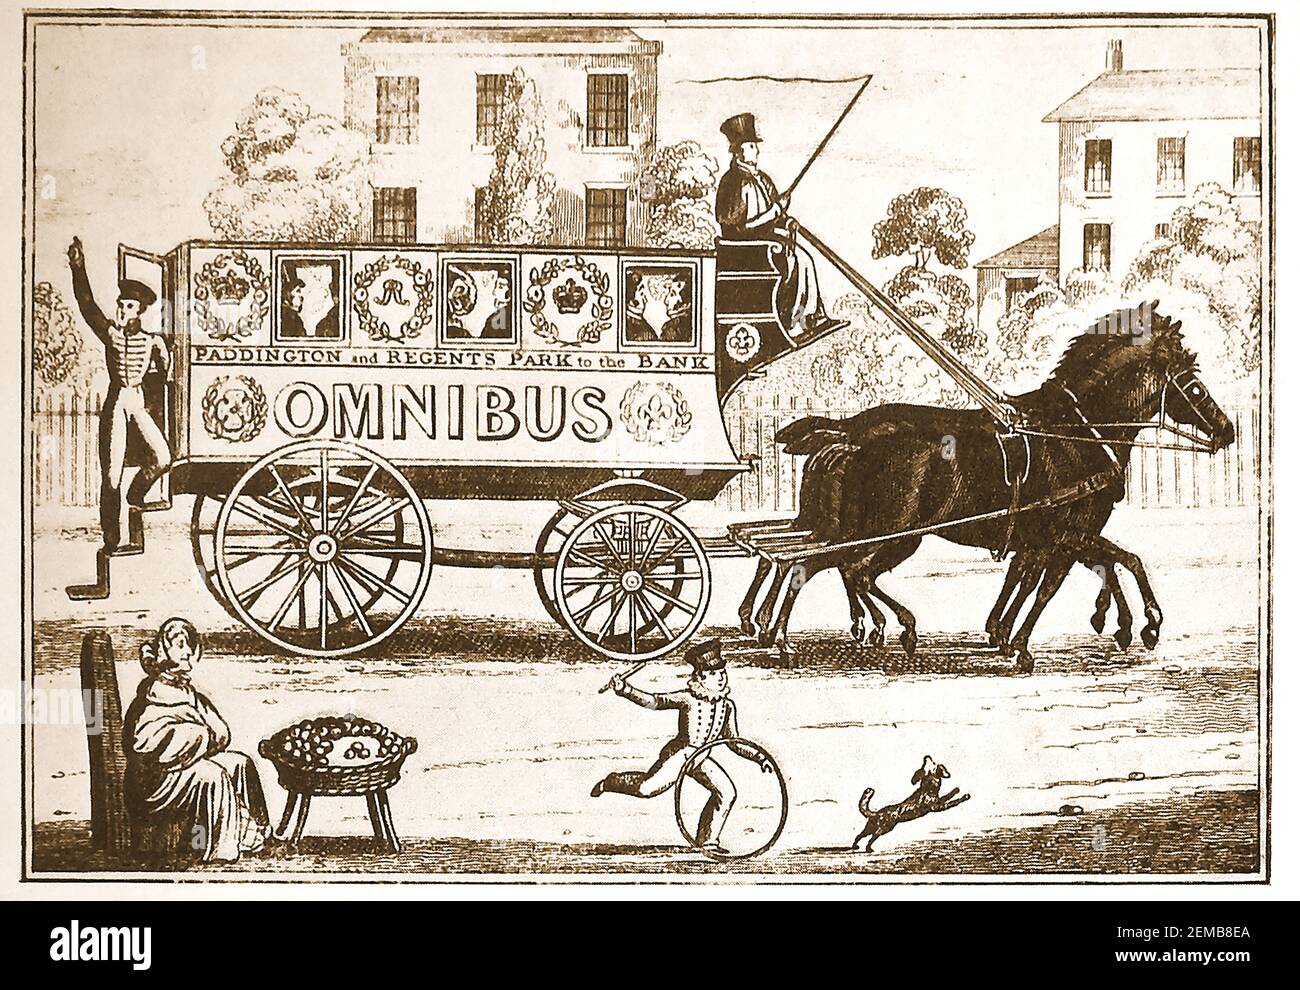 Il primo autobus di George Shilbeer trainato da cavalli (omnibus) che correva da Paddington e Regents Park alla Thames Bank (alcuni dicono la Bank of England) a Londra (UK). ---- Shilbeer (1797 – 1866) è stato un costruttore di barche inglese che, mentre si trovava a Parigi, ha deciso di copiare il servizio Omnibus che aveva visto lì nella sua nativa Londra e ha continuato a pioniere di questo tipo di trasporto pubblico in Gran Bretagna. Foto Stock